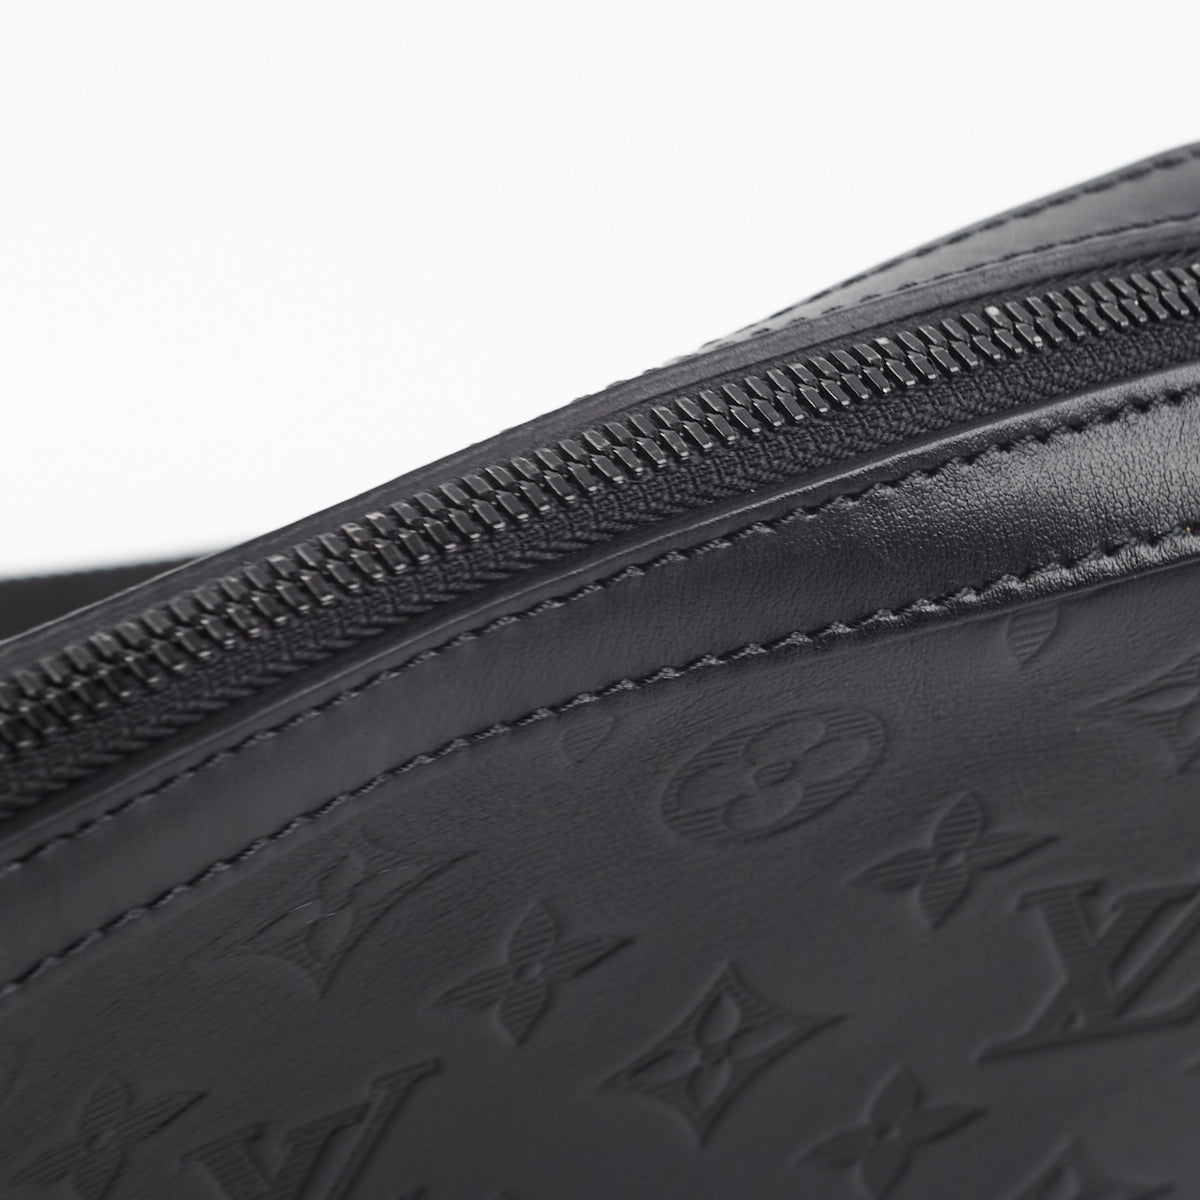 หลุยส์วิตตอง Louis Vuitton STUDIO Messenger Bag